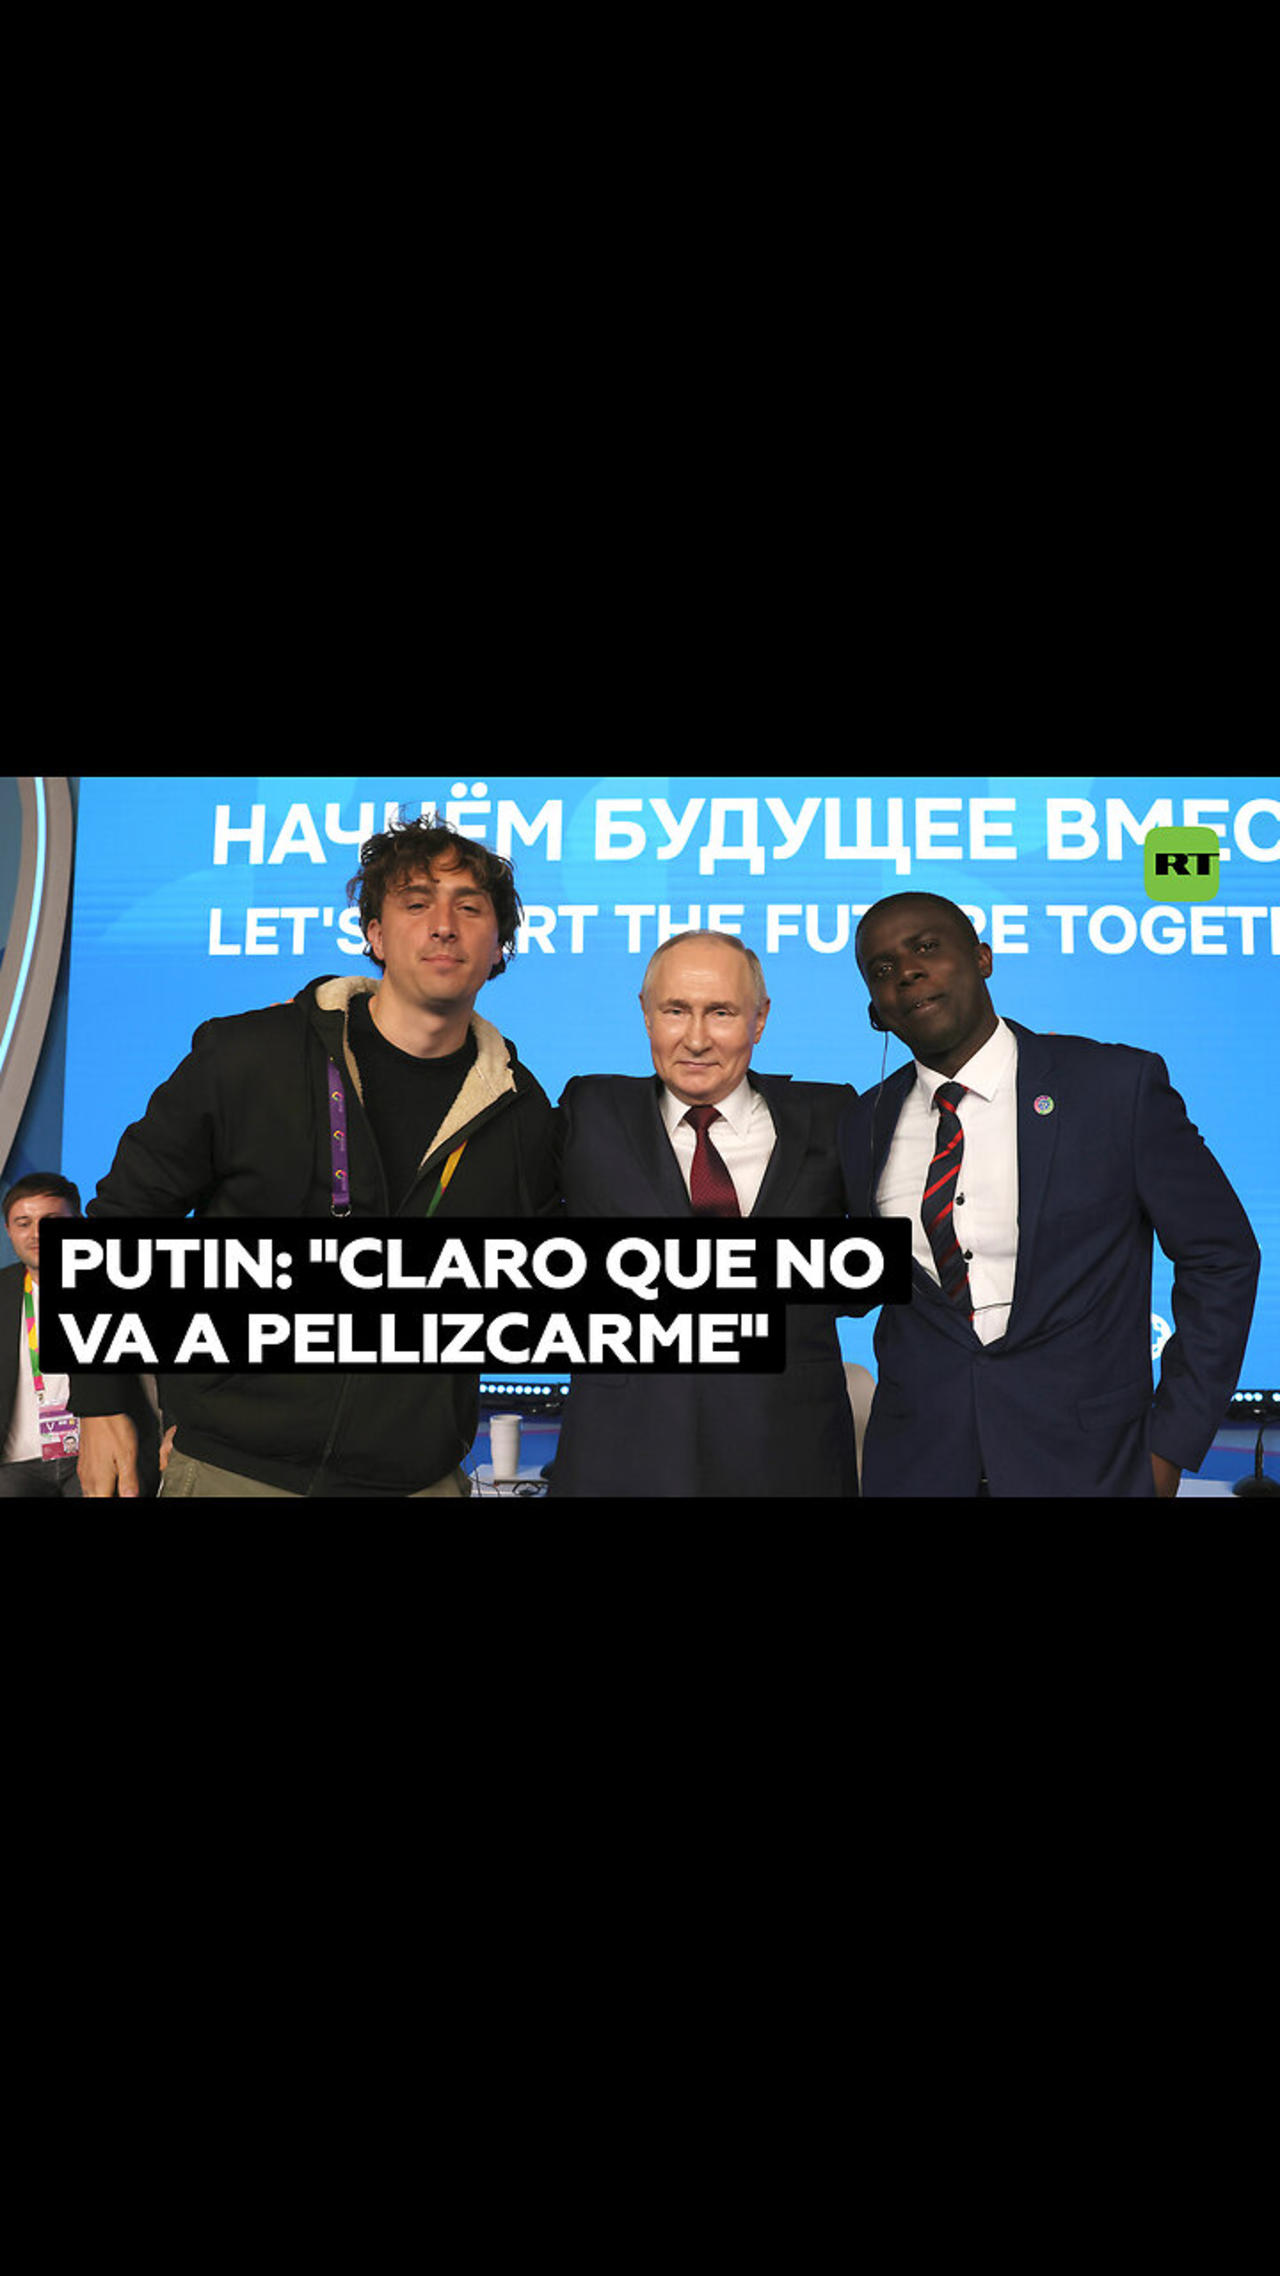 Joven italiano solicita una fotografía a Vladímir Putin para demostrar que es humano